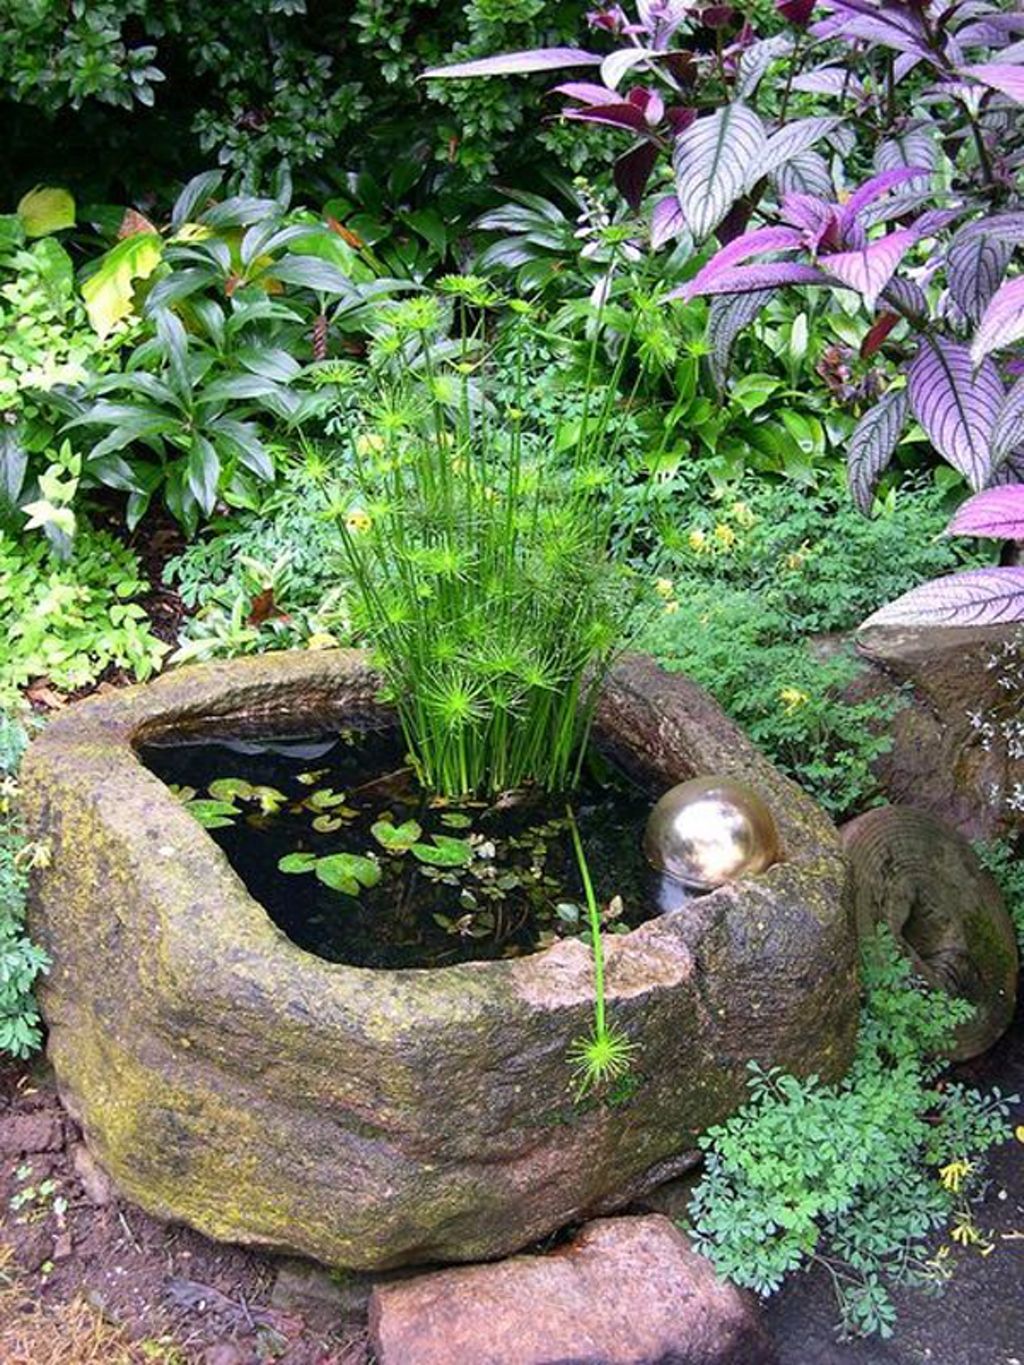 23 Удивительных мини-пруда для небольшого сада или террасы